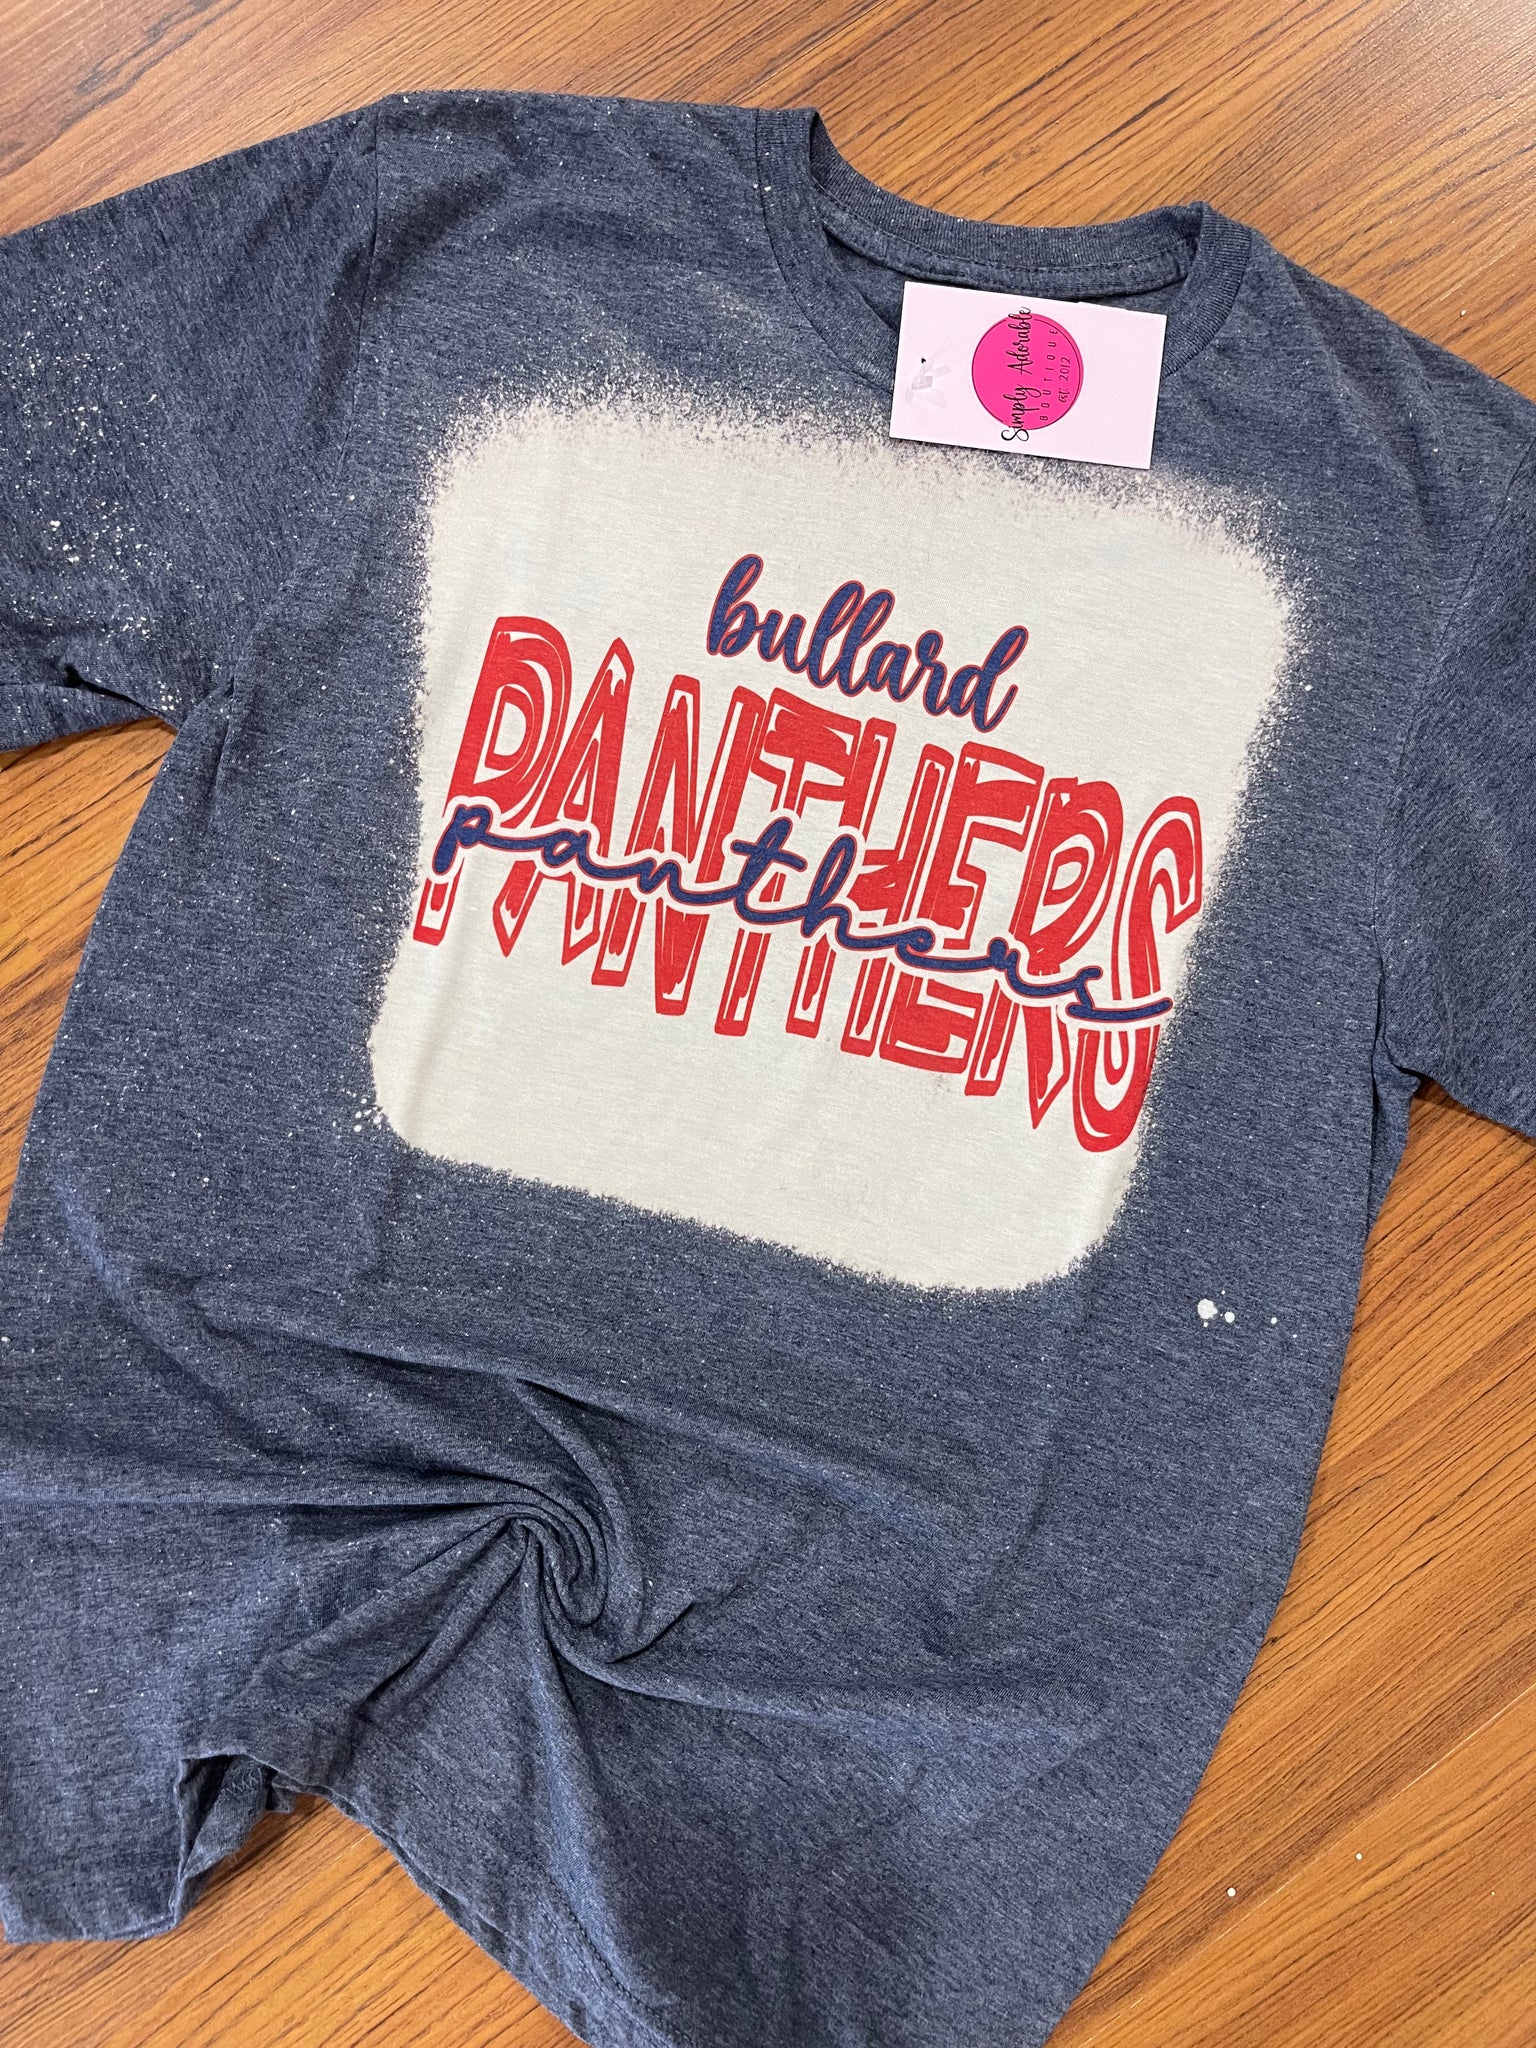 Bullard Panthers Bleached School Spirit Shirt